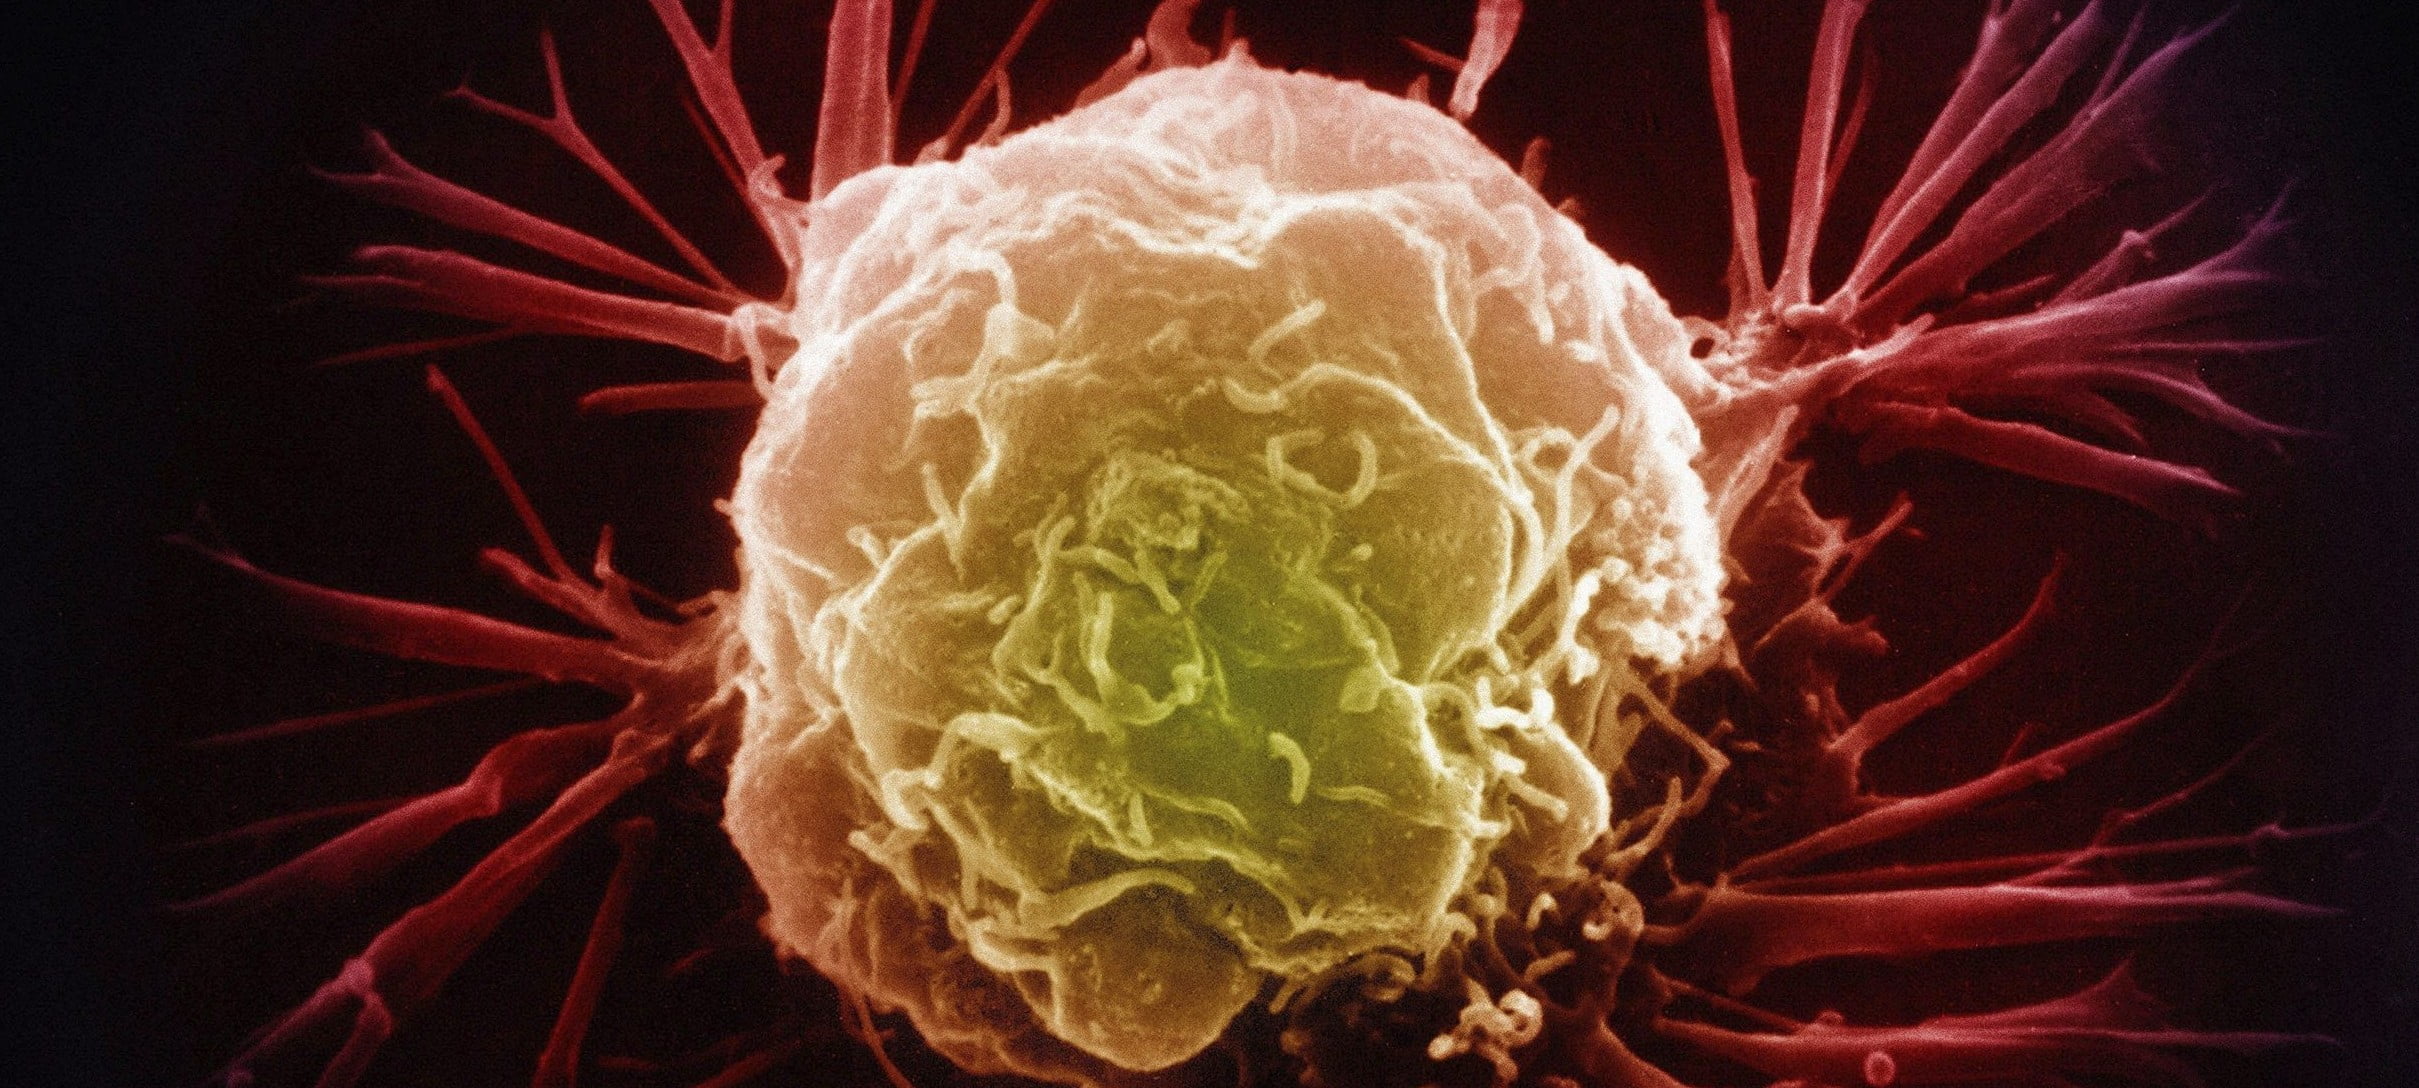 Breast Cancer Cell 014 E1460105913764 مجلة نقطة العلمية